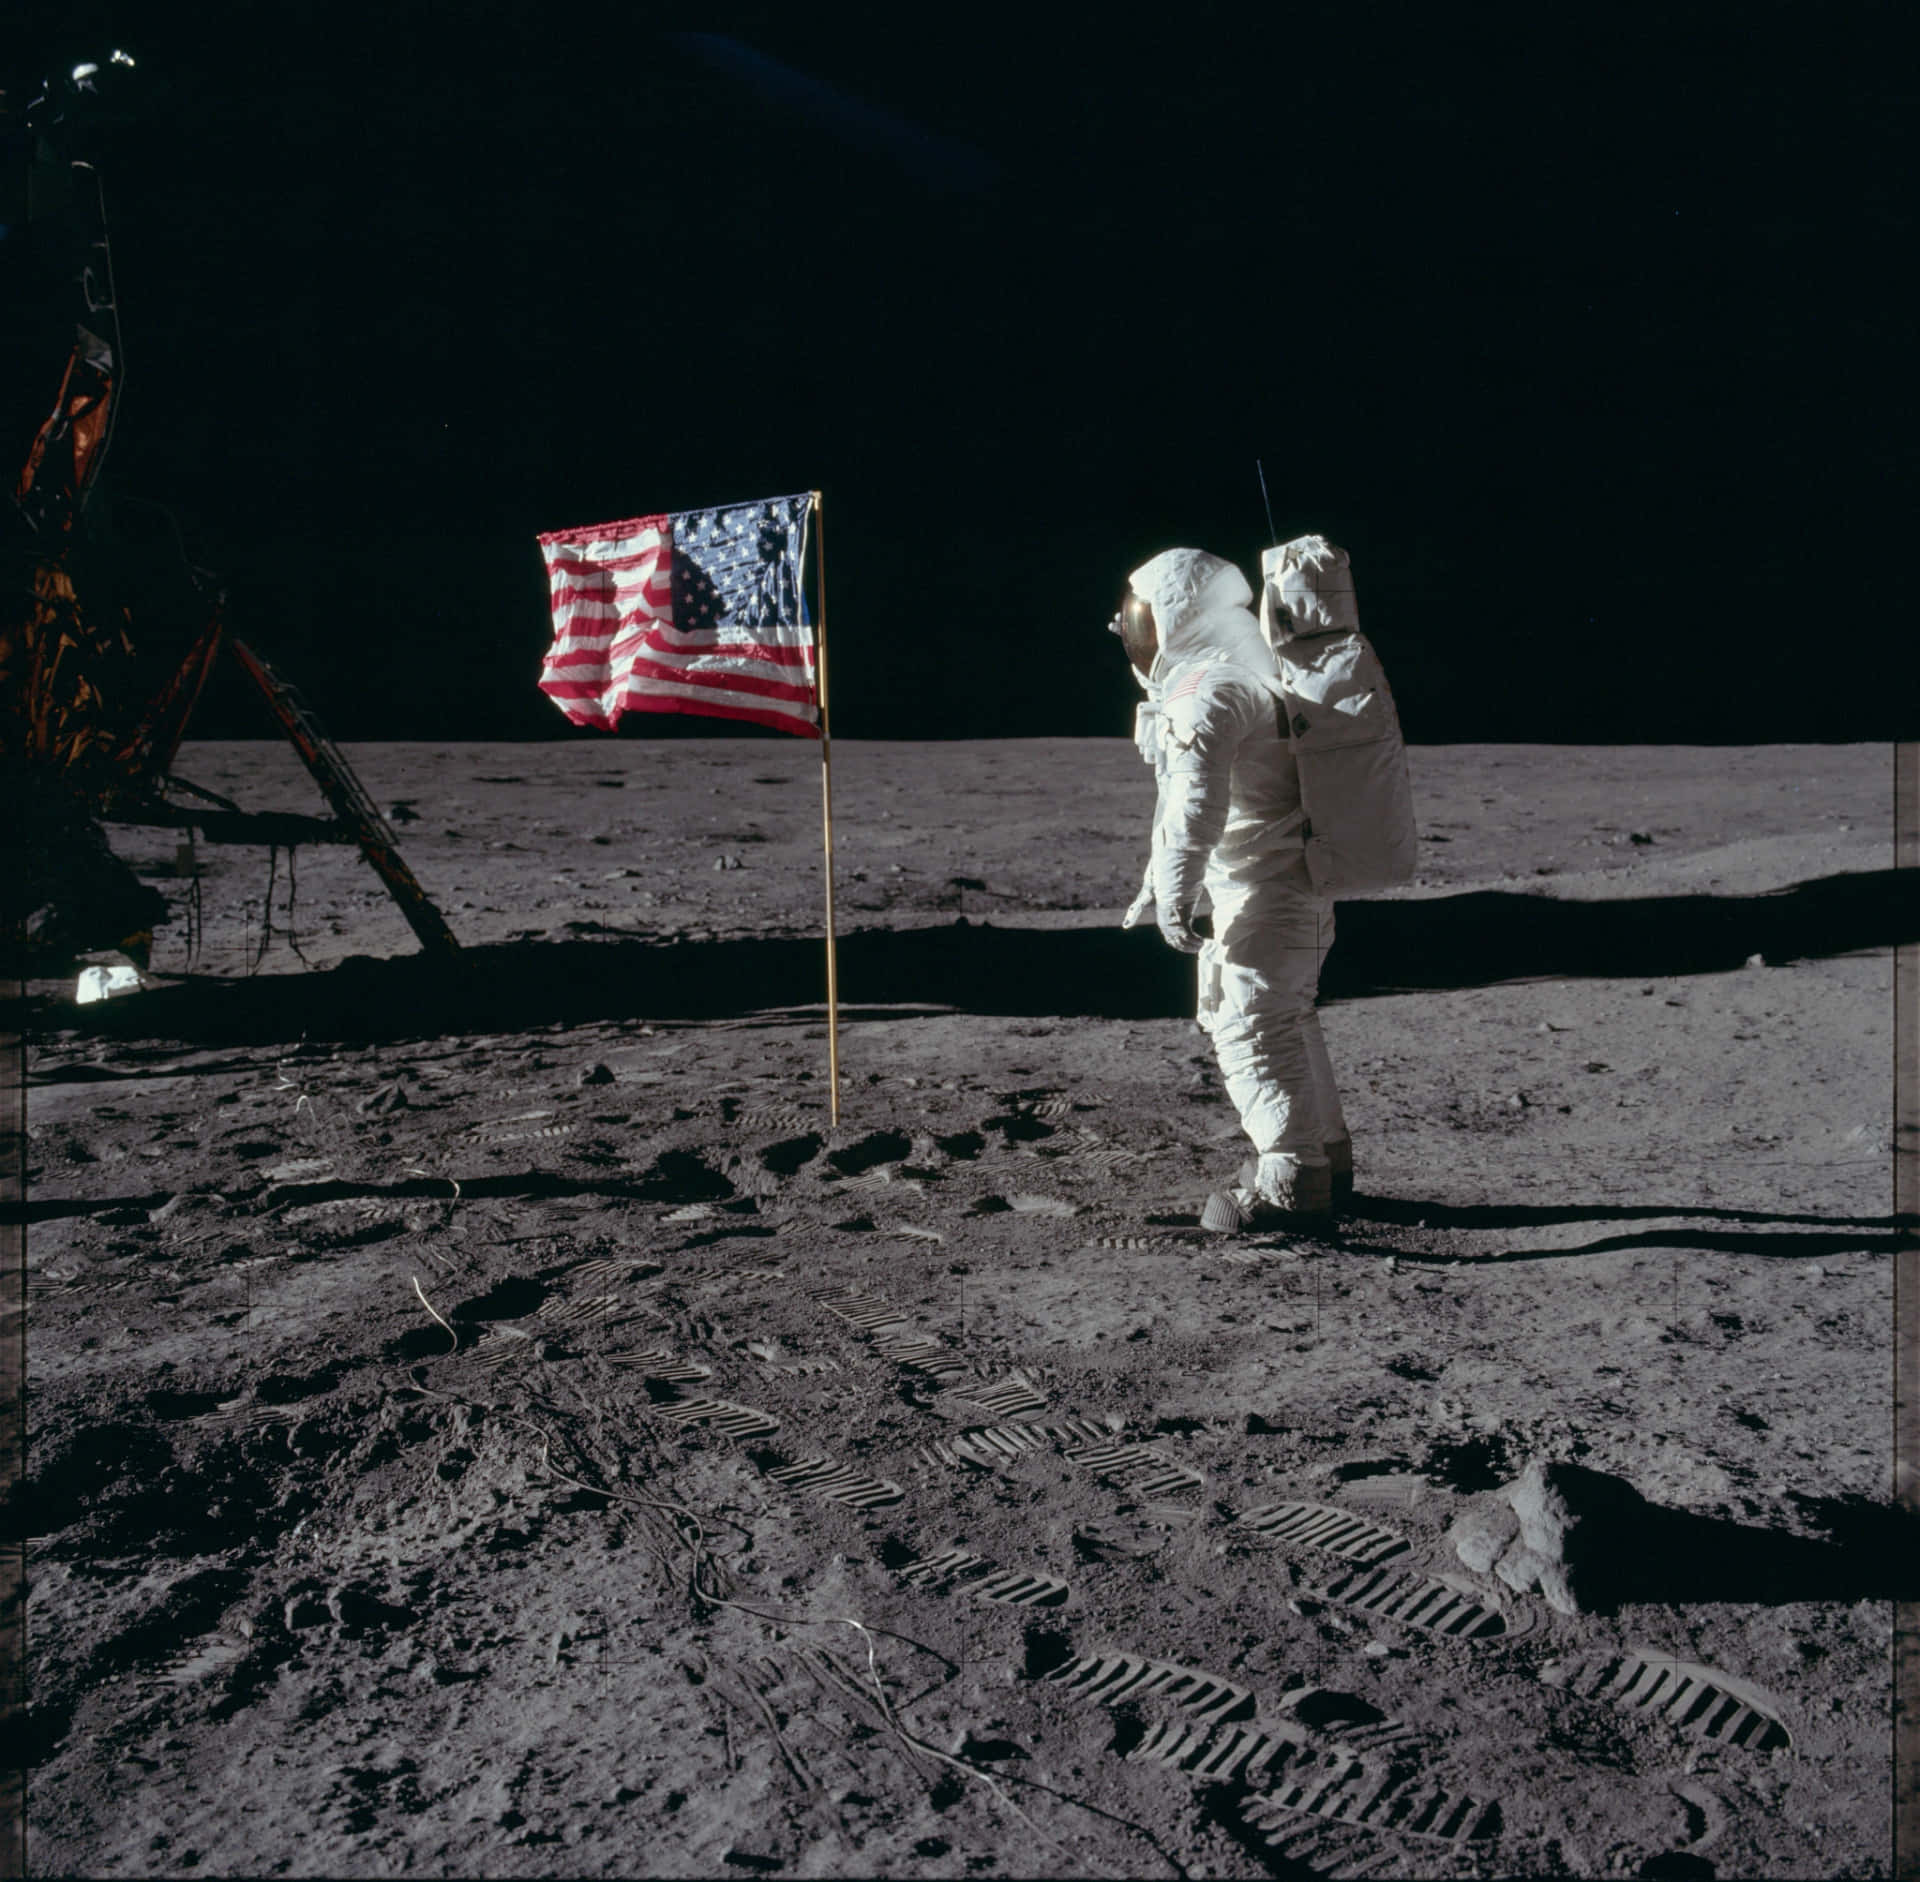 Billede af den Apollo 11 rummission af Måneoverfladen.